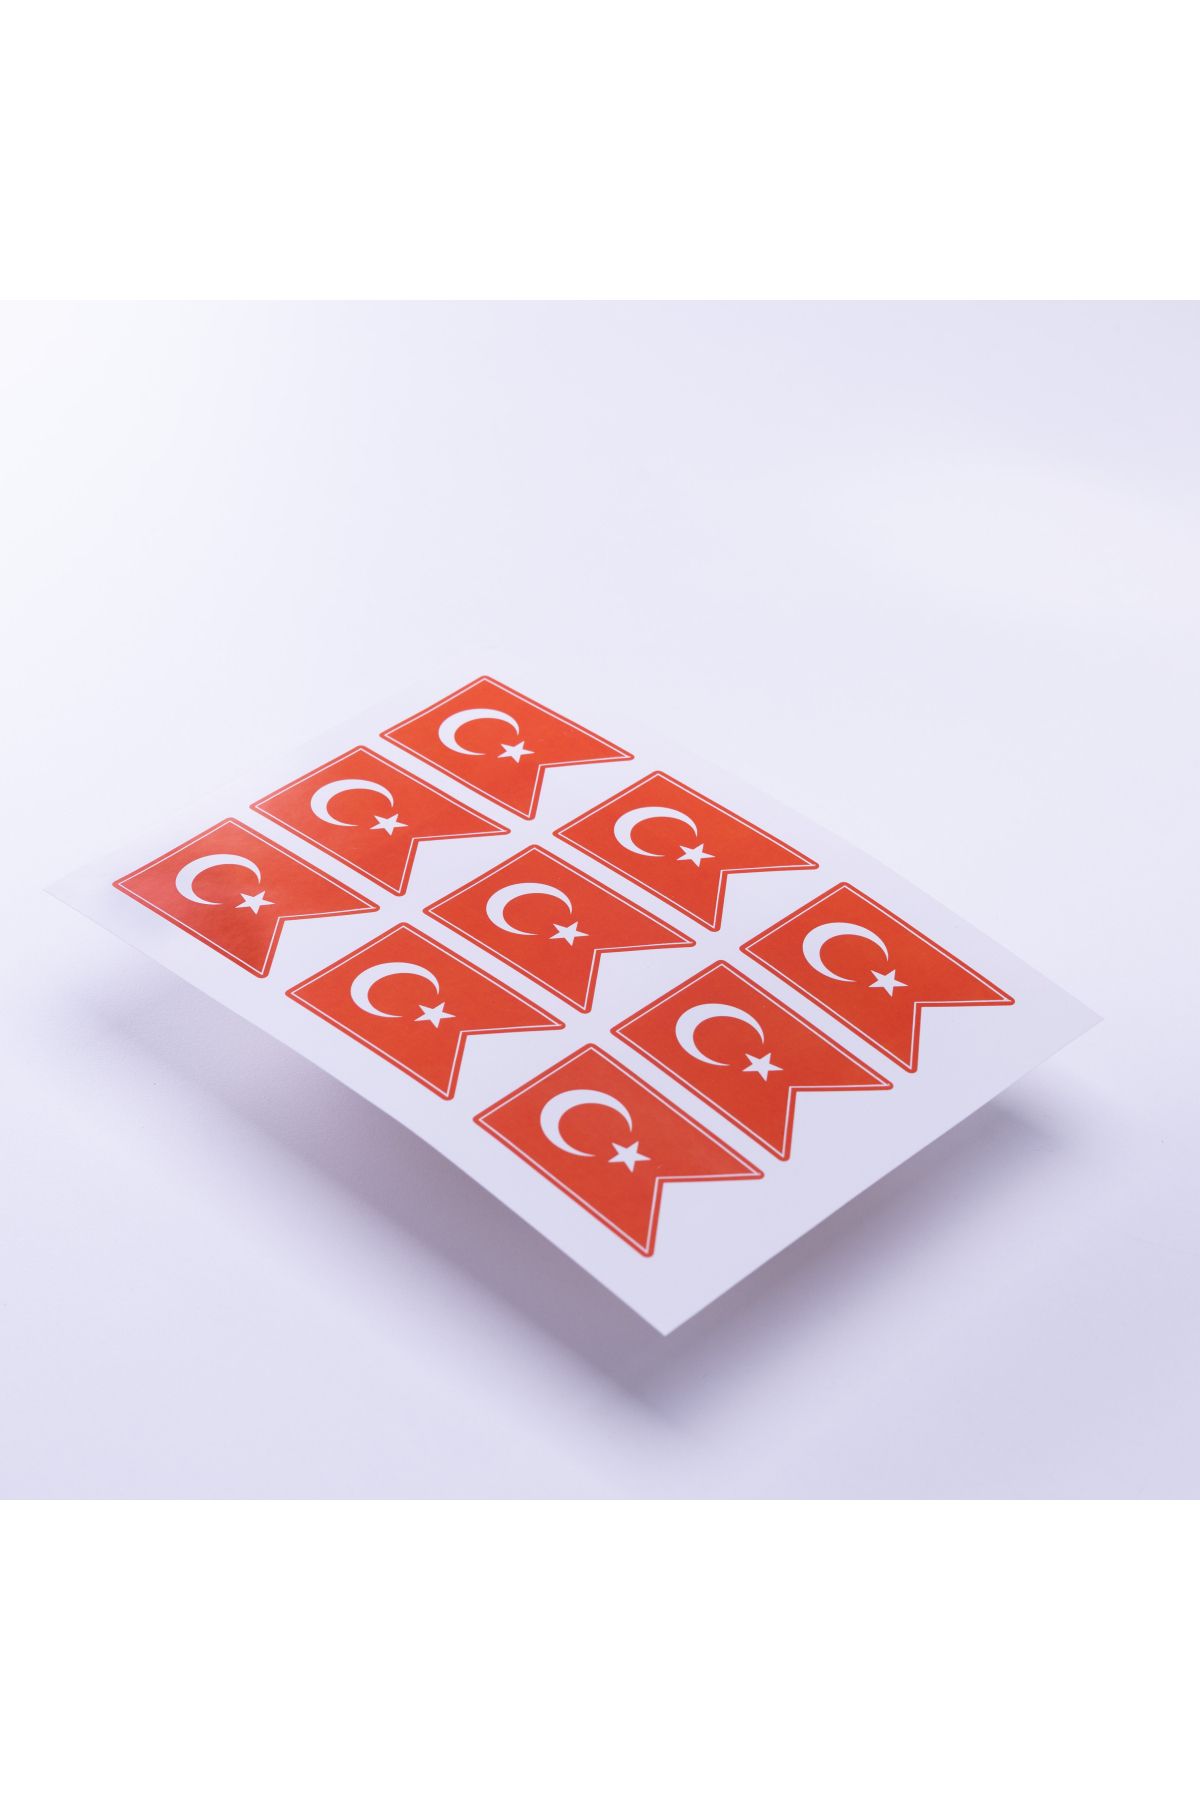 Bimotif Türk Bayrağı Flama Temalı Sticker, A5 2 Adet